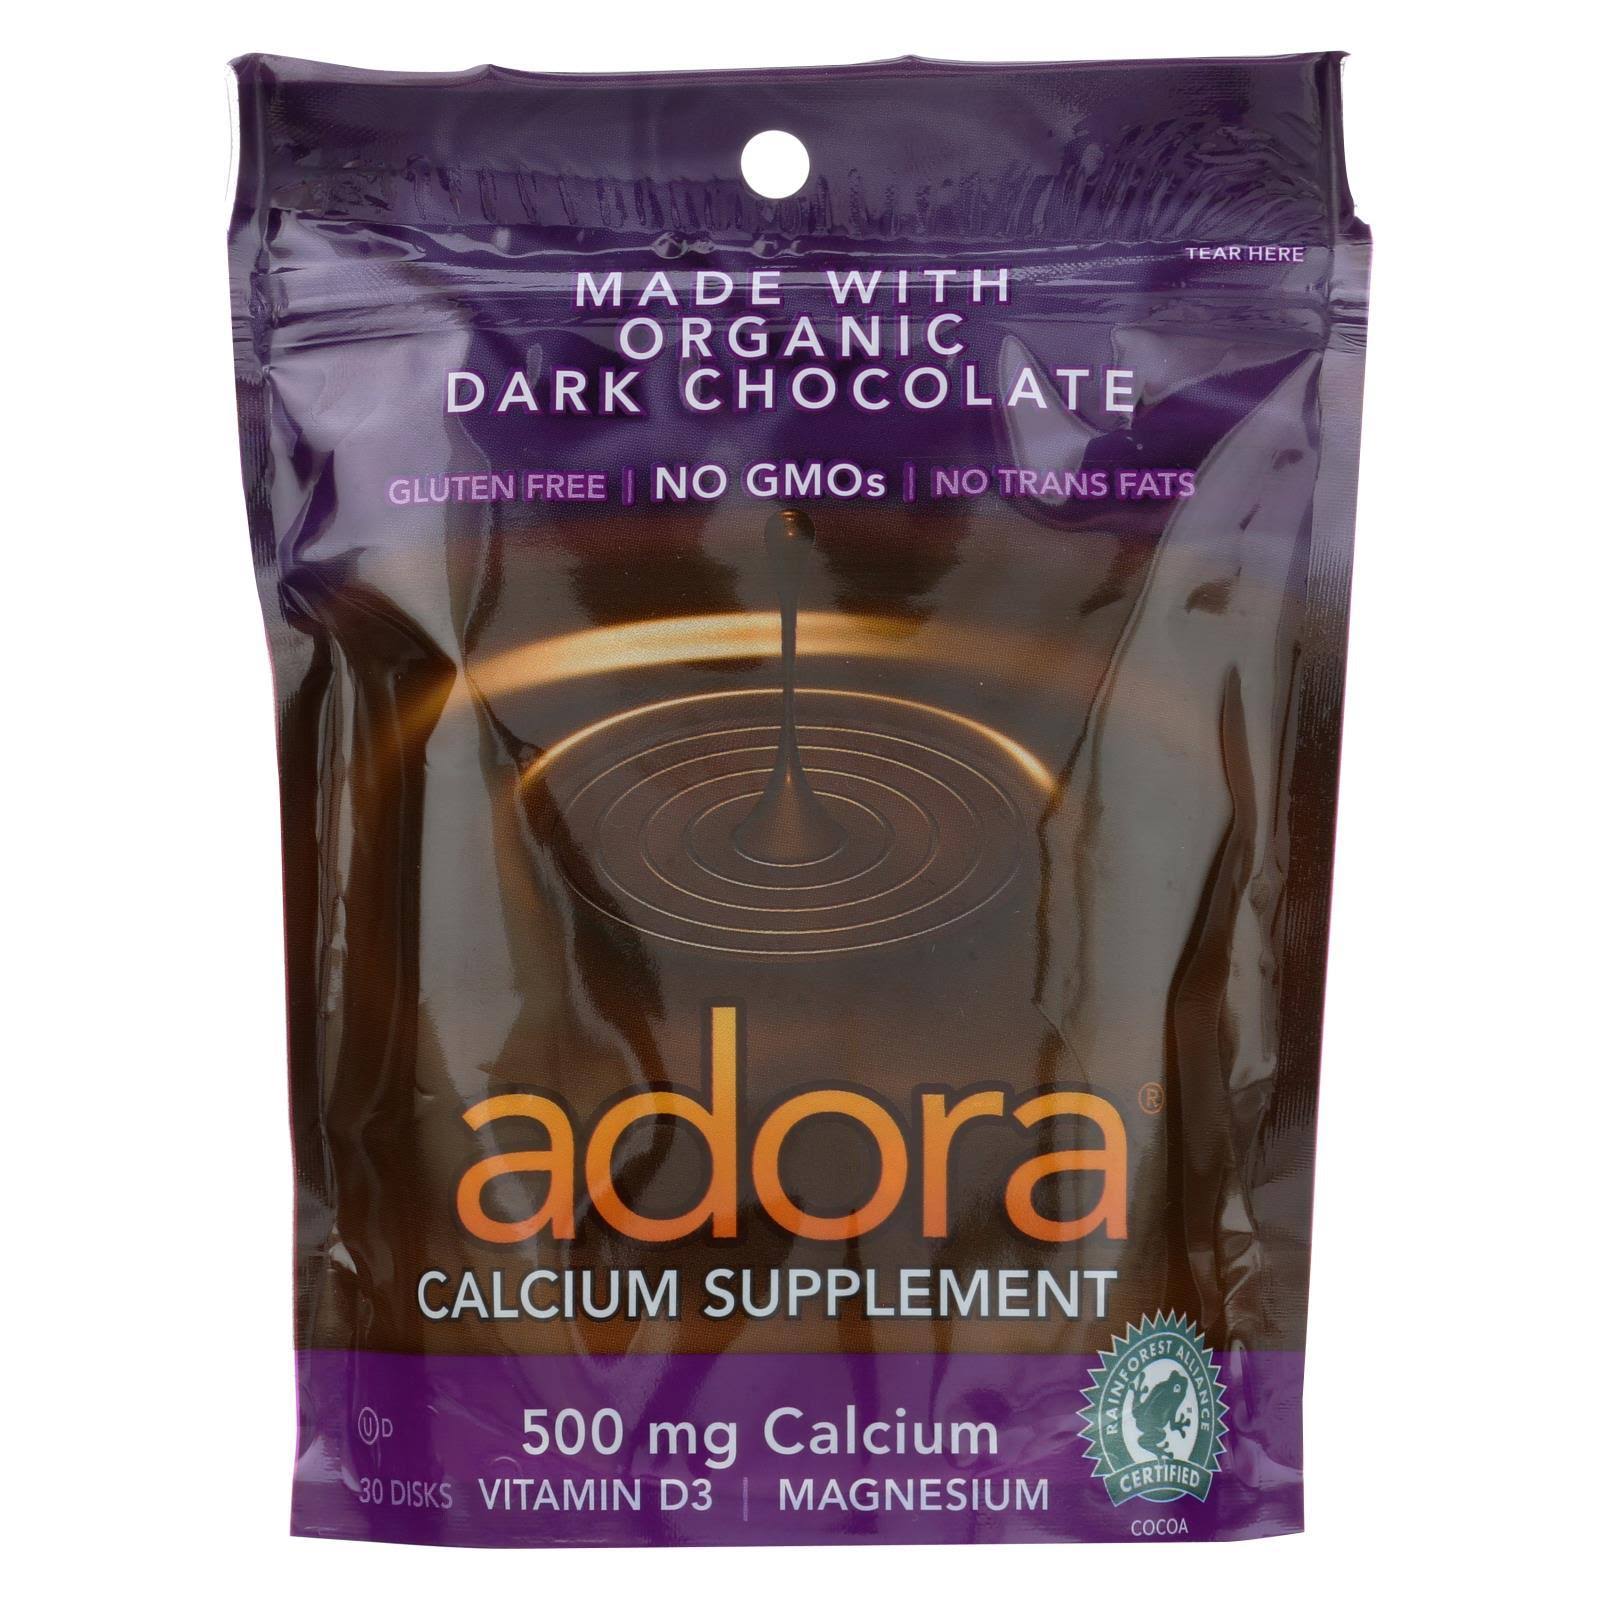 Adora Calcium Supplement Disk - Organic Dark Chocolate, 30 Count